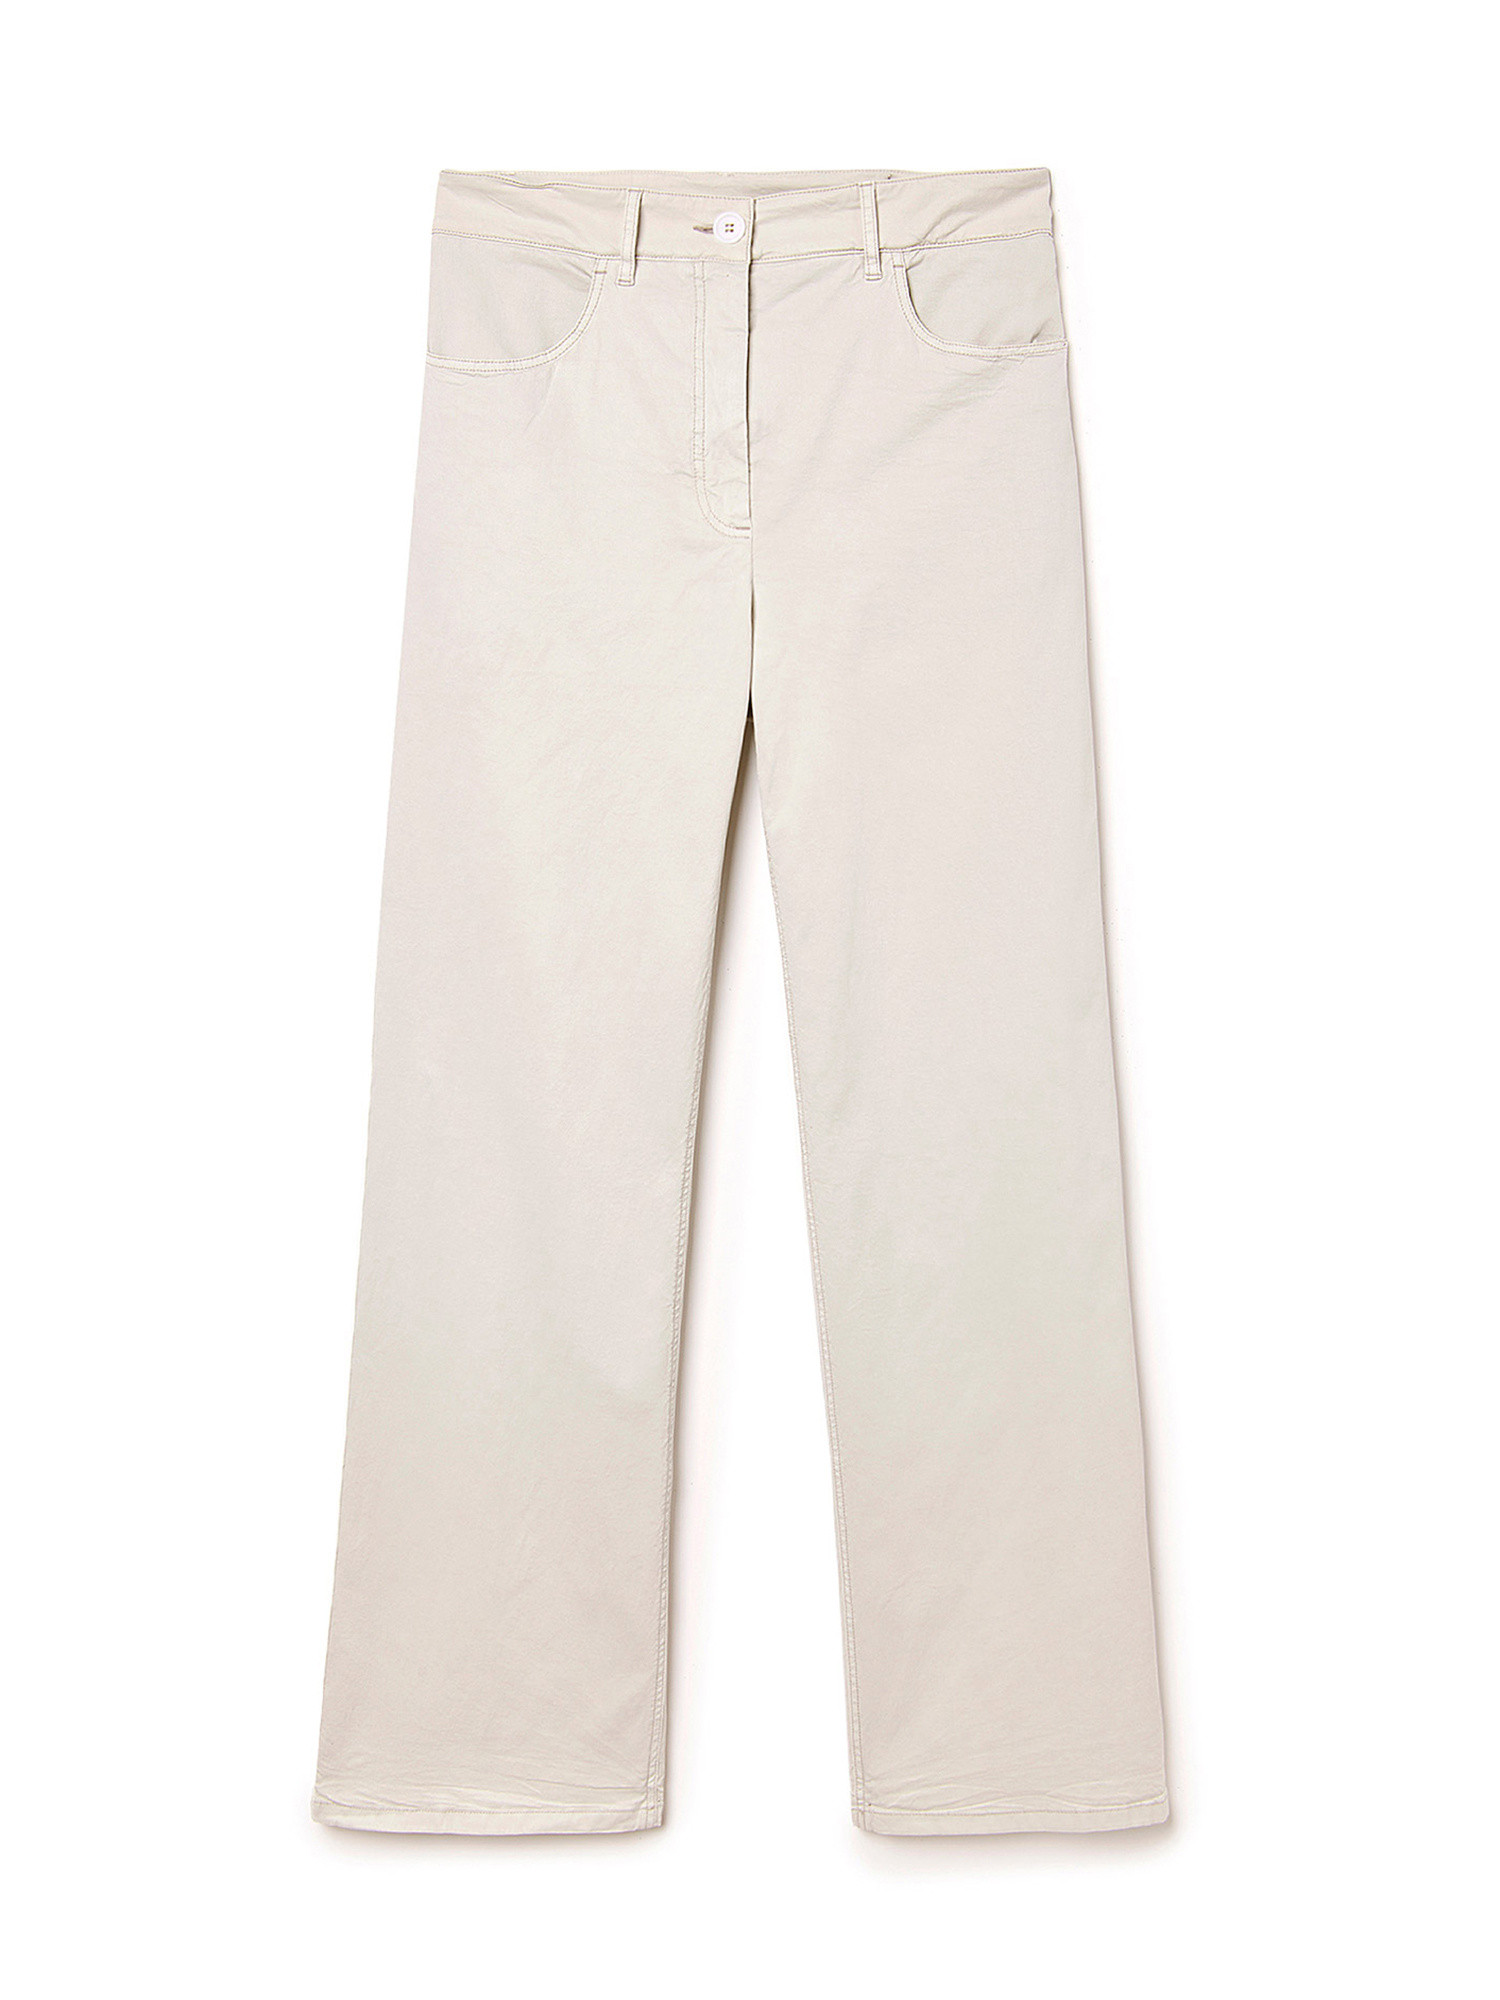 Pantaloni Olivina in twill di cotone tinto in capo e lyocell elasticizzato, Bianco, large image number 0